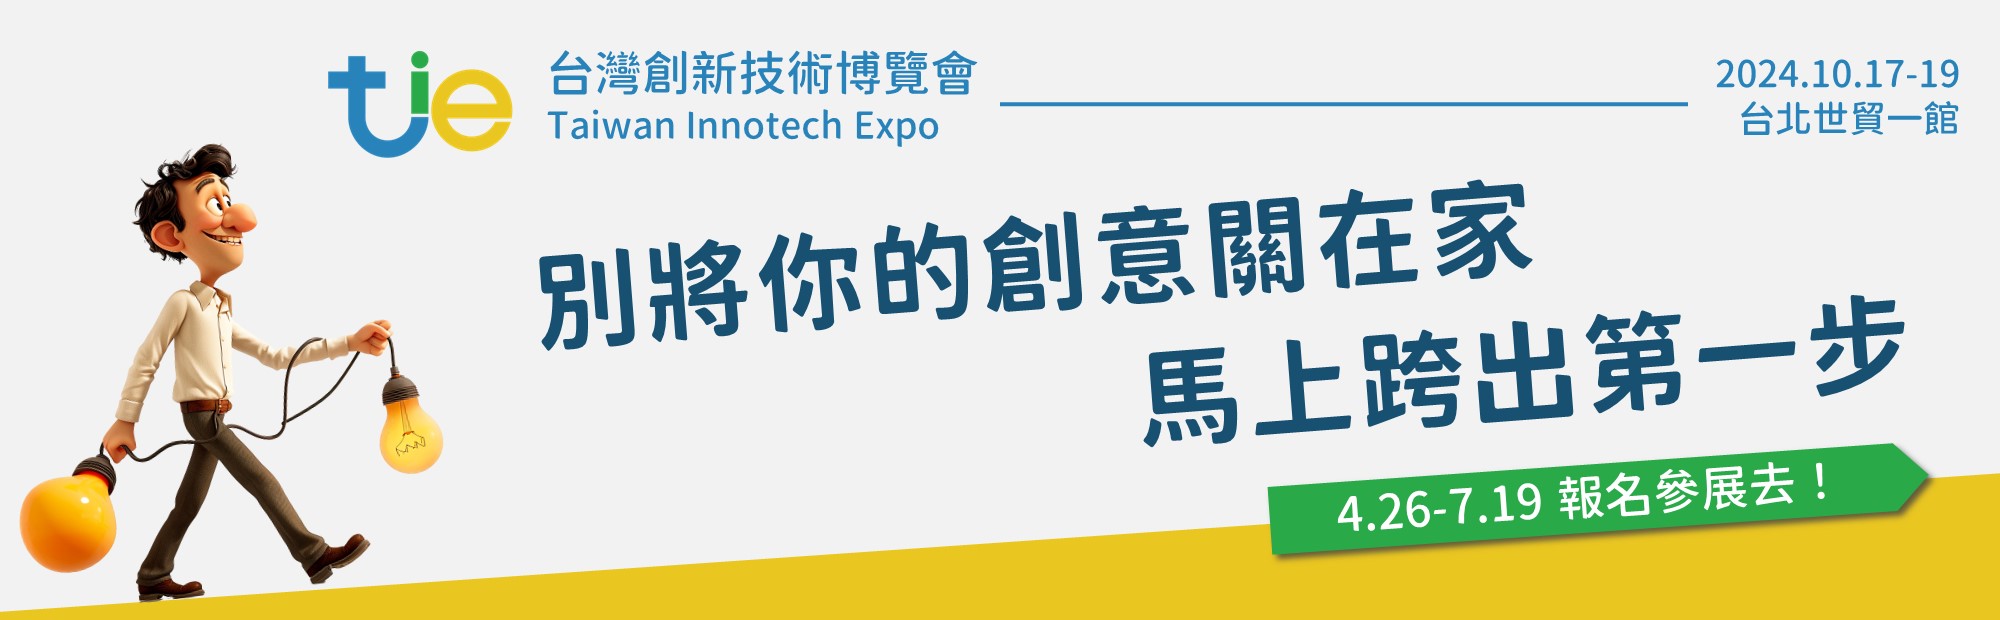 台灣創新技術博覽會報名簡章